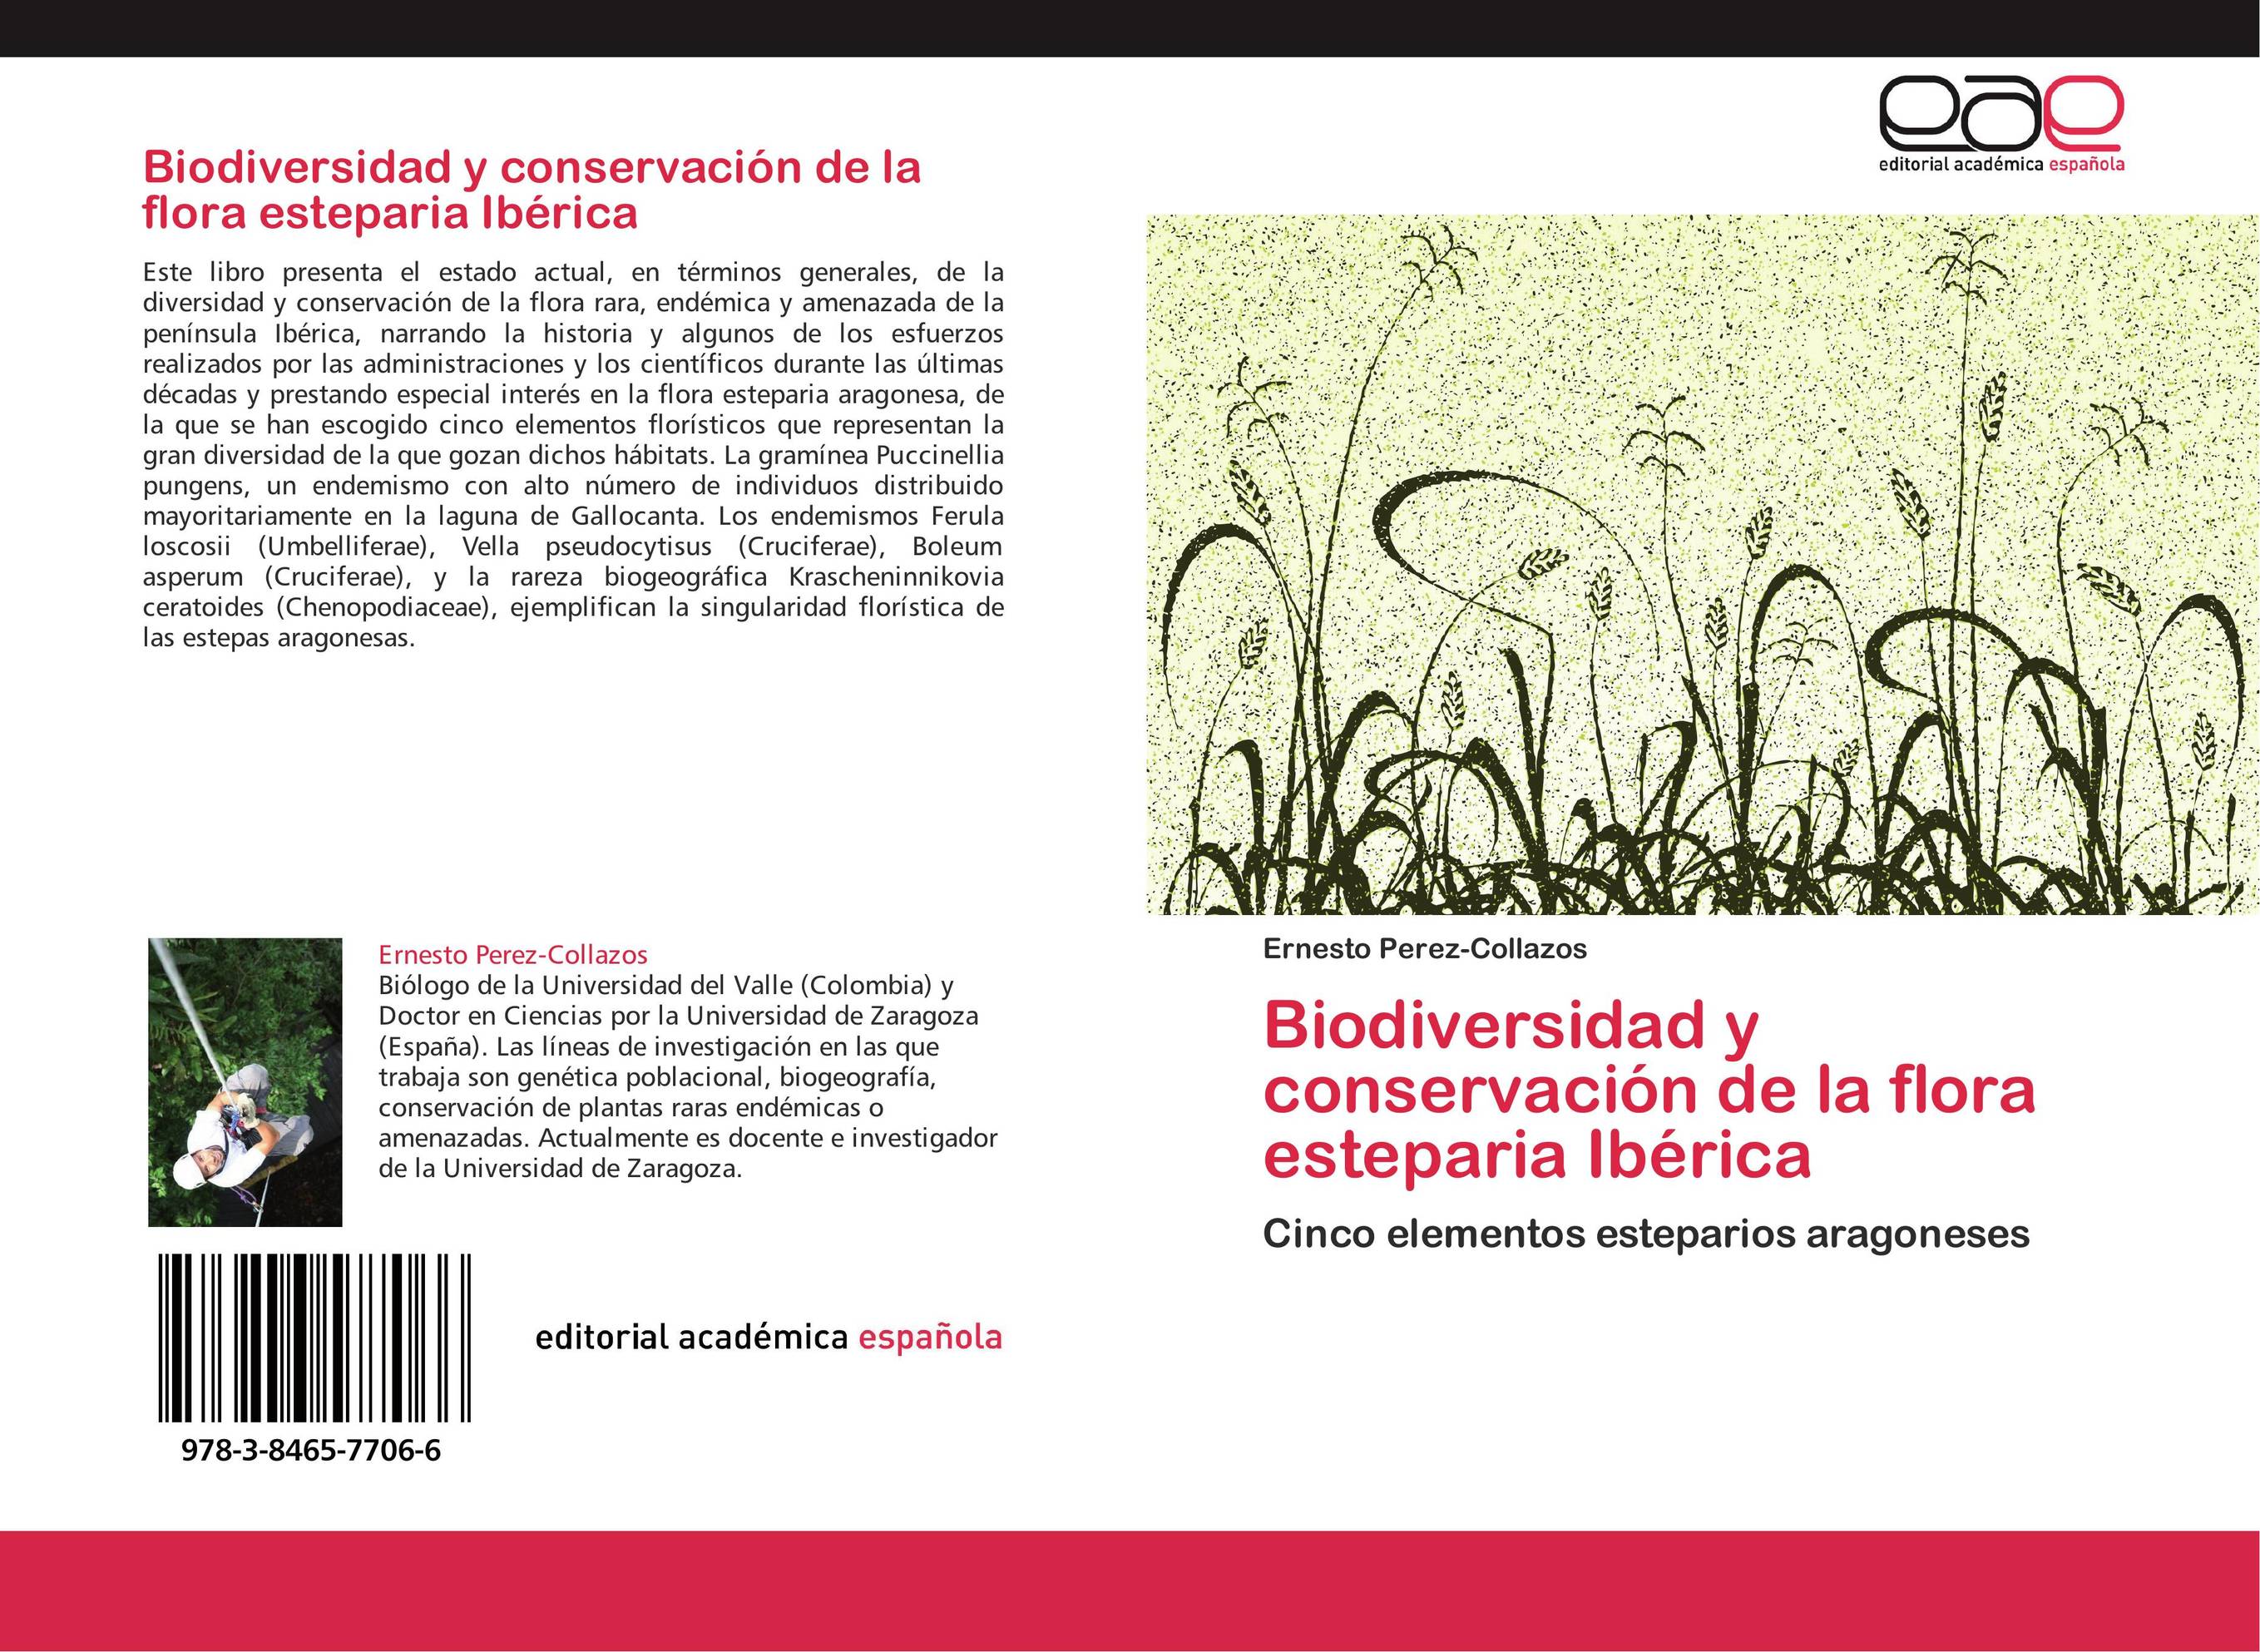 Biodiversidad y conservación de la flora esteparia Ibérica